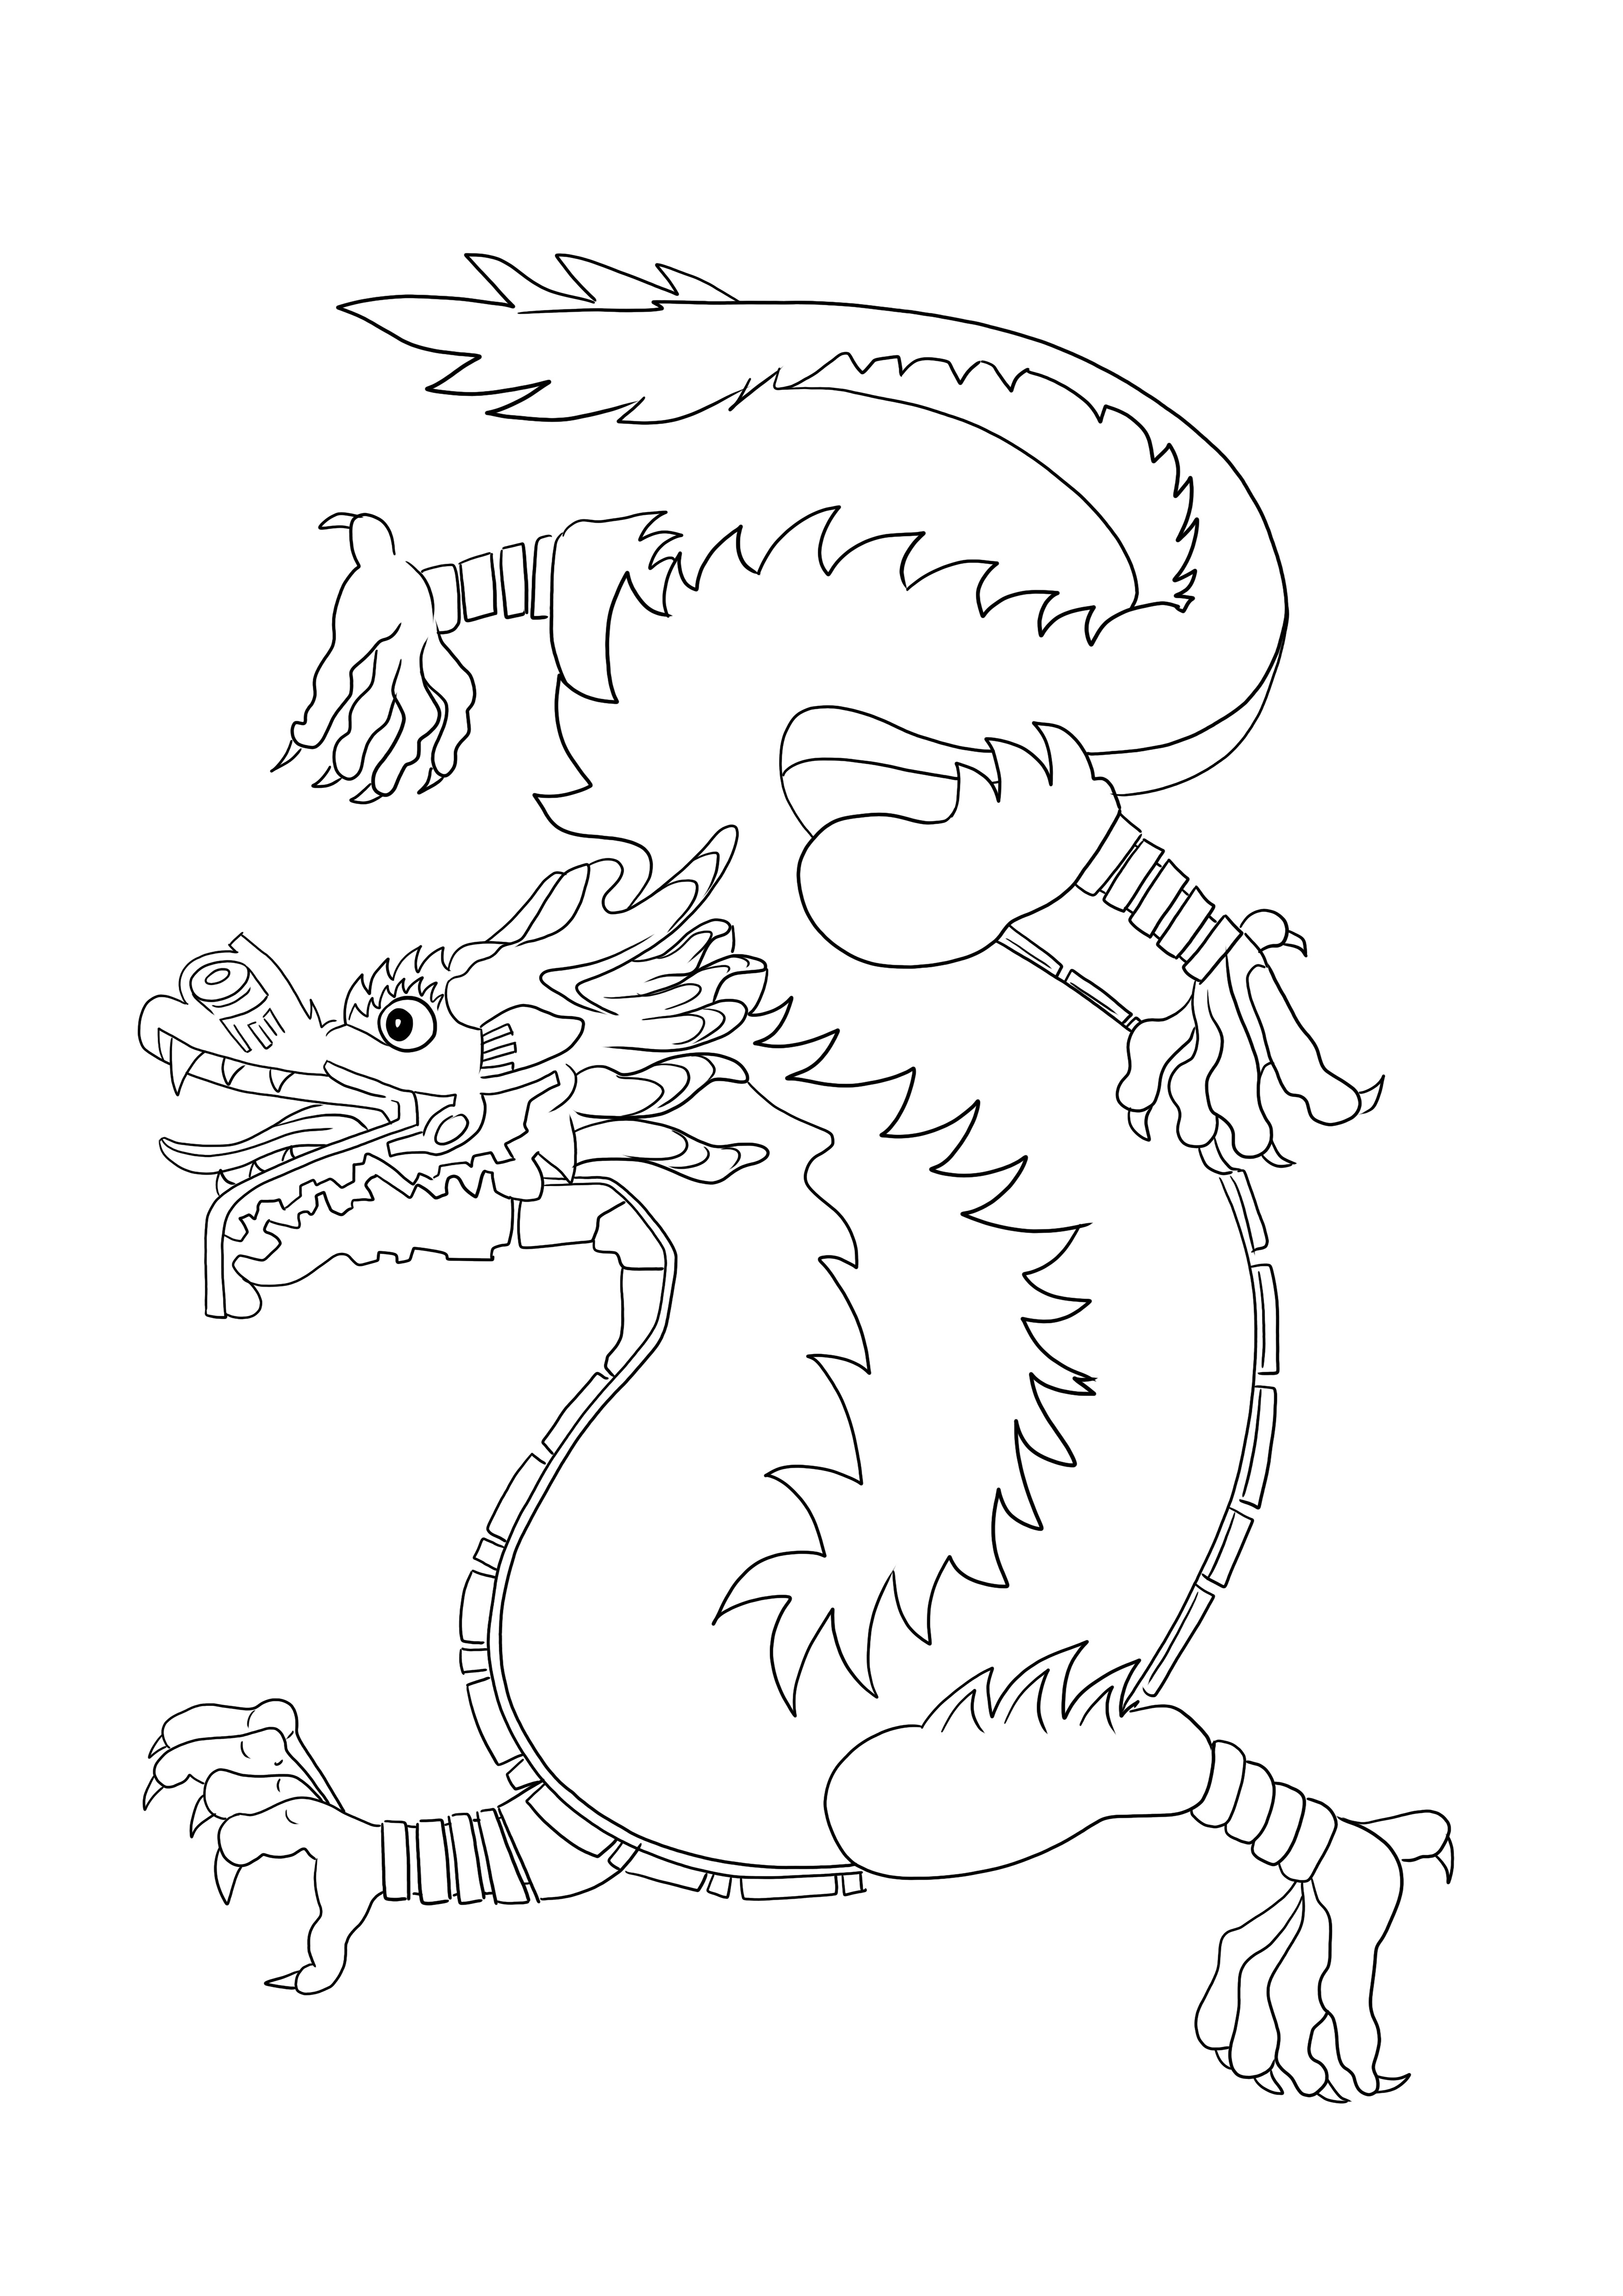 Planșă de colorat Dragon chinezesc pentru a imprima sau descărca gratuit pentru copii